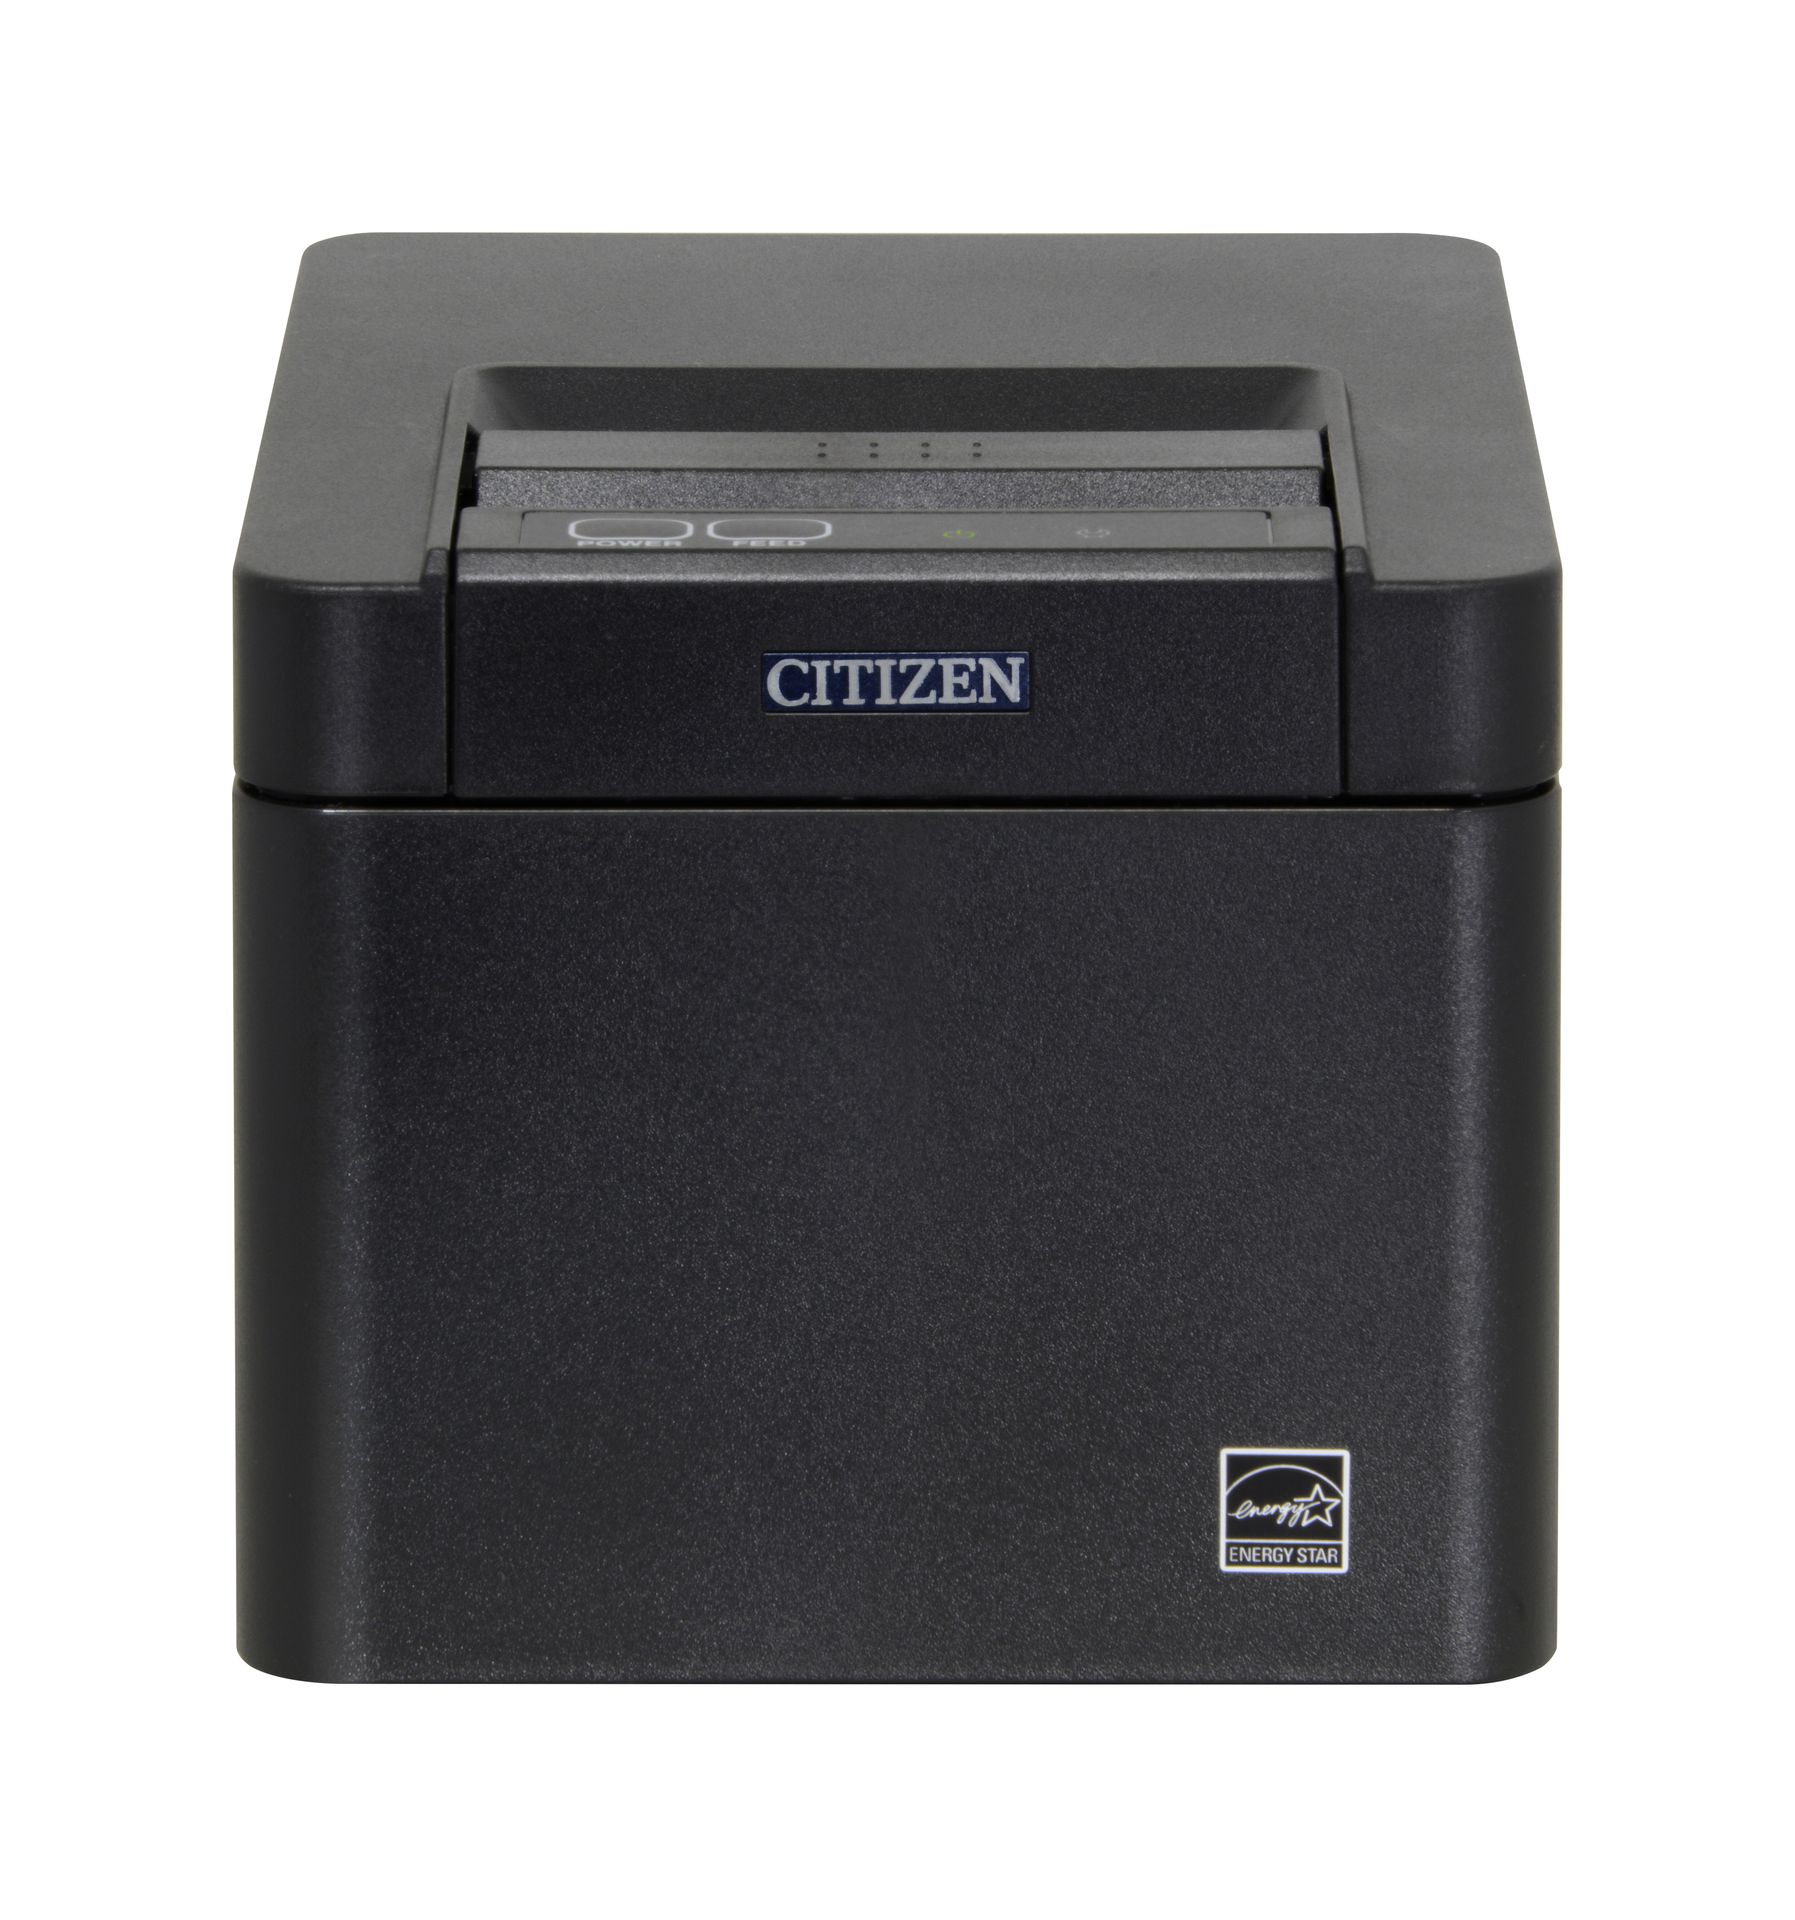 Citizen CT-E601 POS Printer